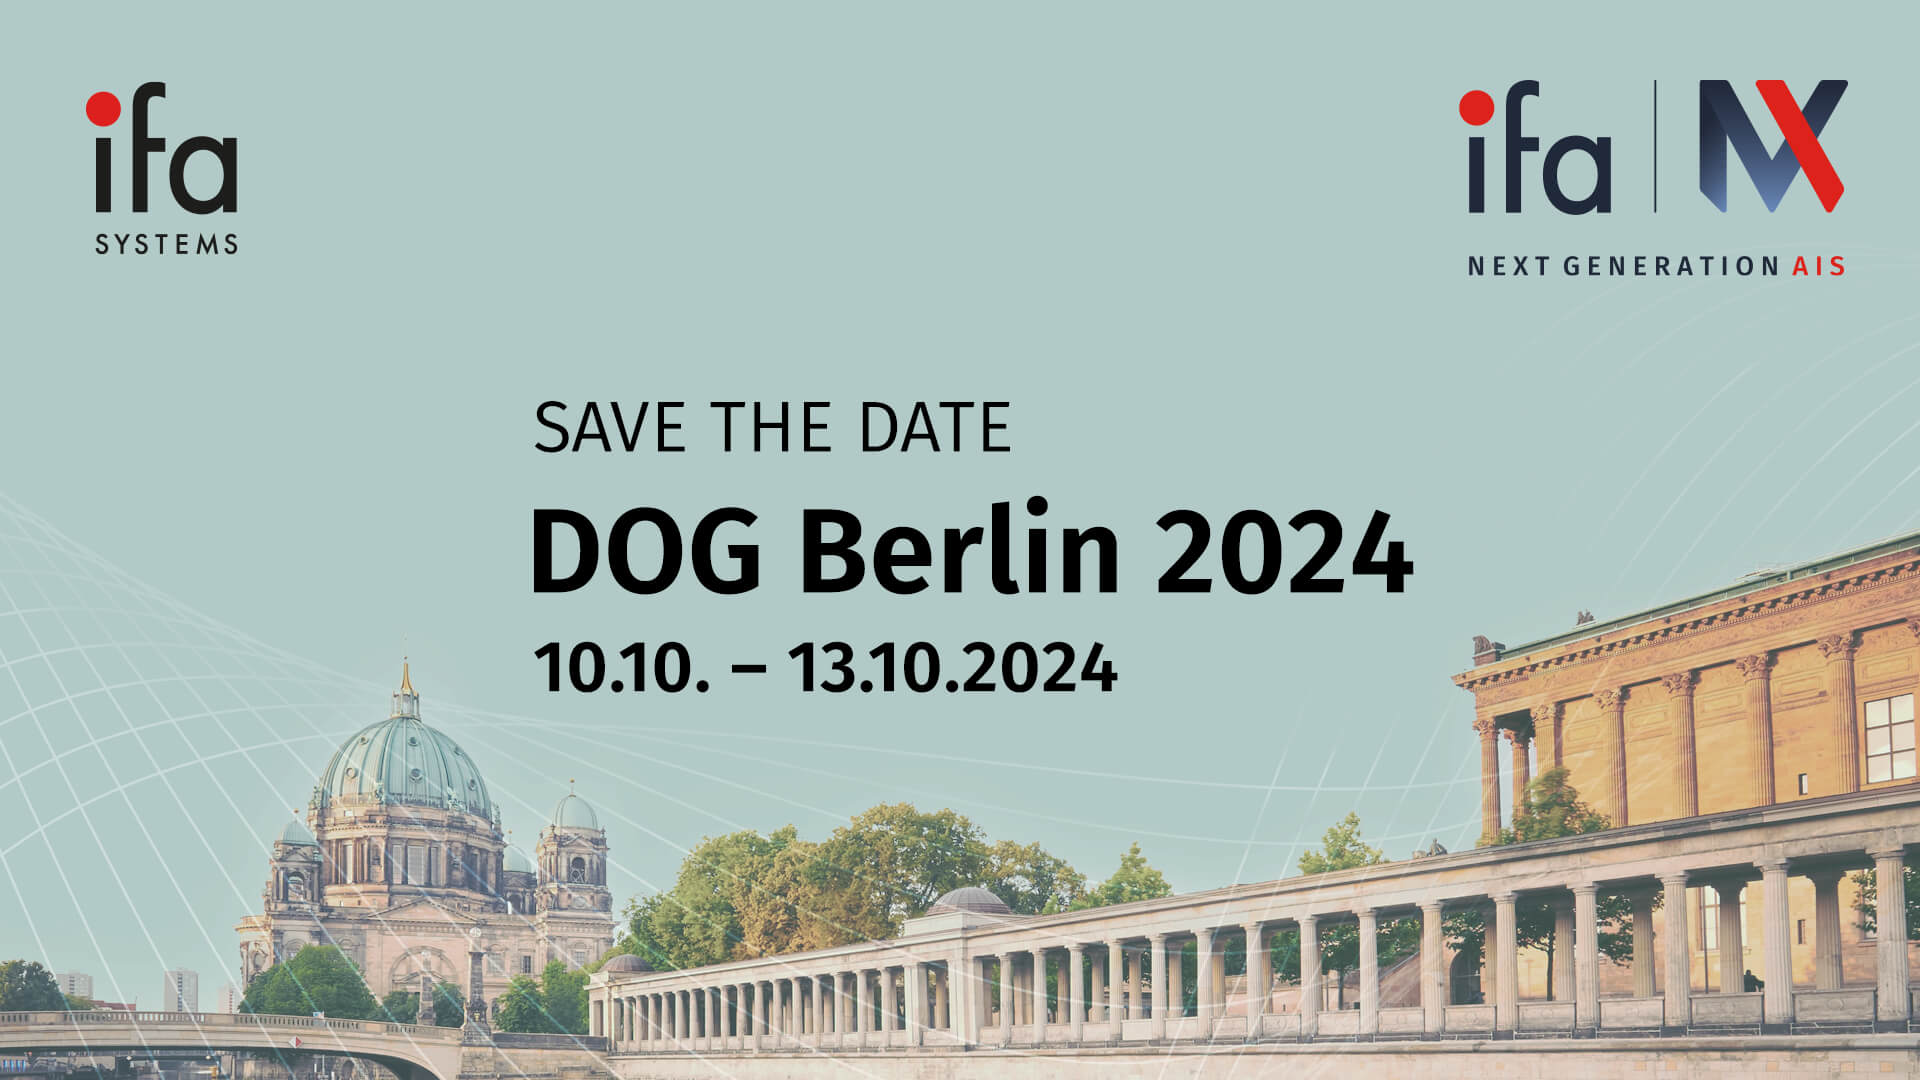 DOG Berlin 2024, die ifa systems AG, Spezialist für Augenarztsoftware